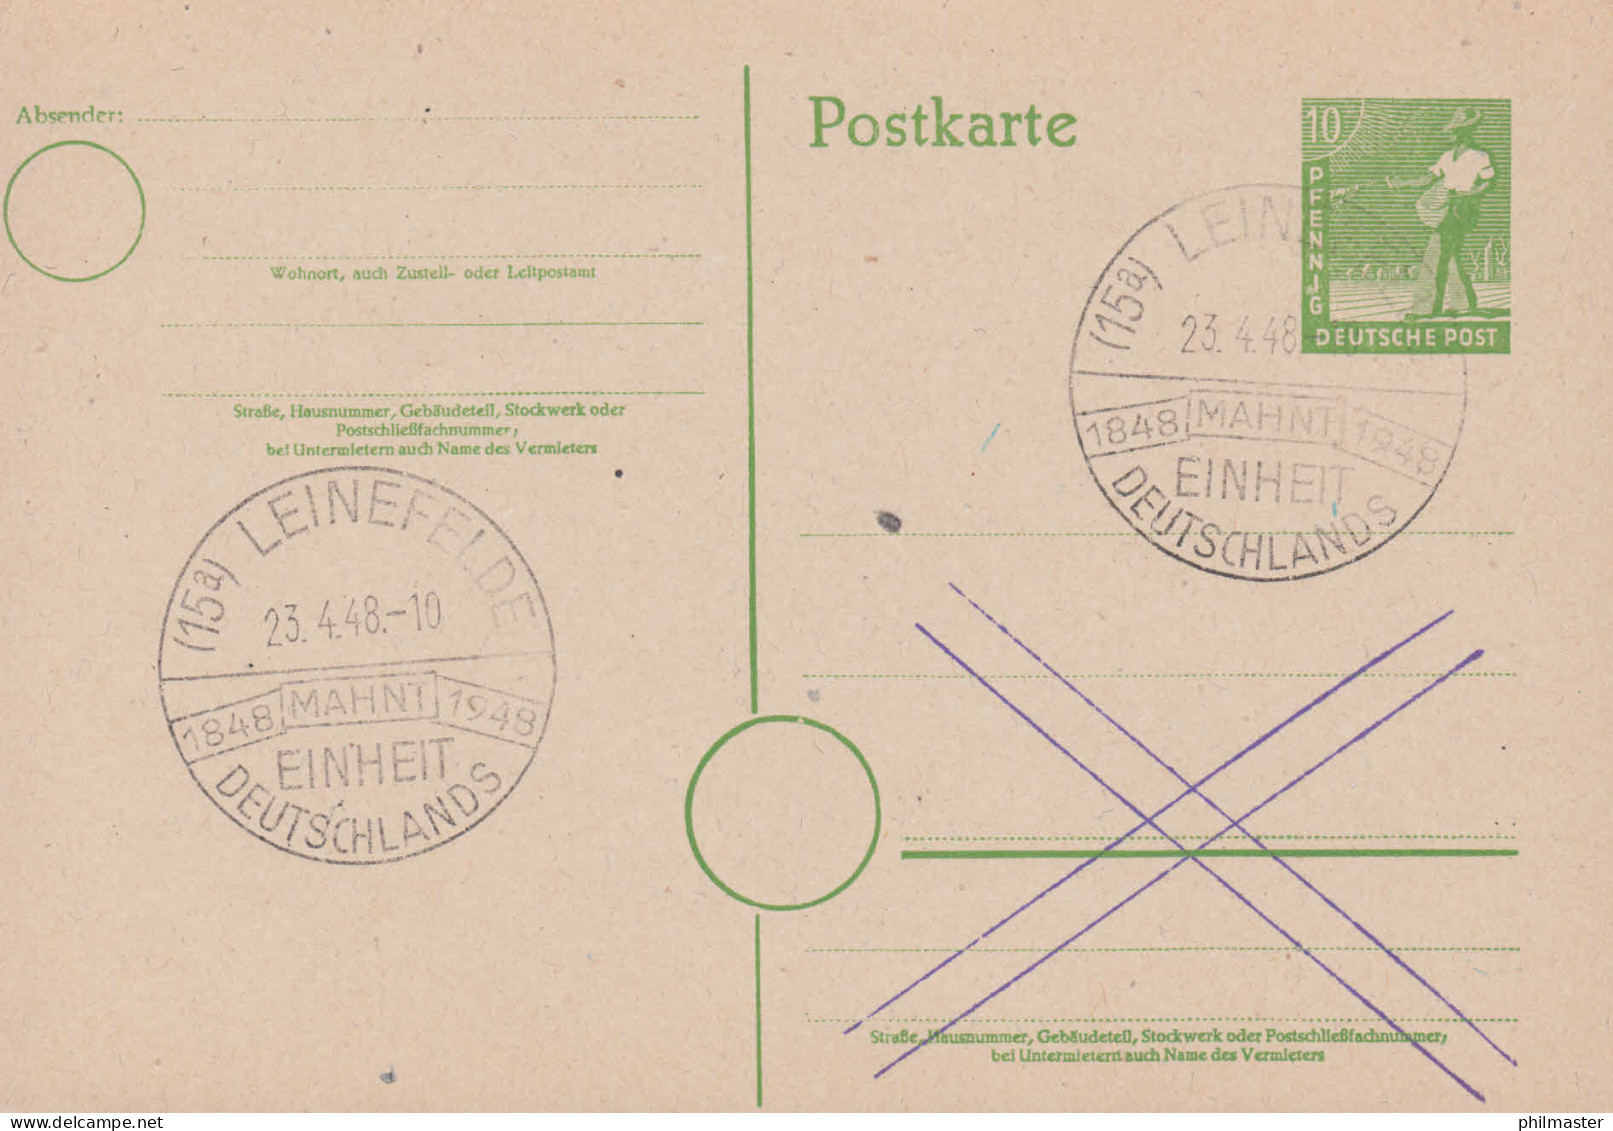 SSt LEINEFELDE 1848-1948 Mahnt Einheit Deutschlands 23.4.48 Auf Postkarte P 961 - Usati